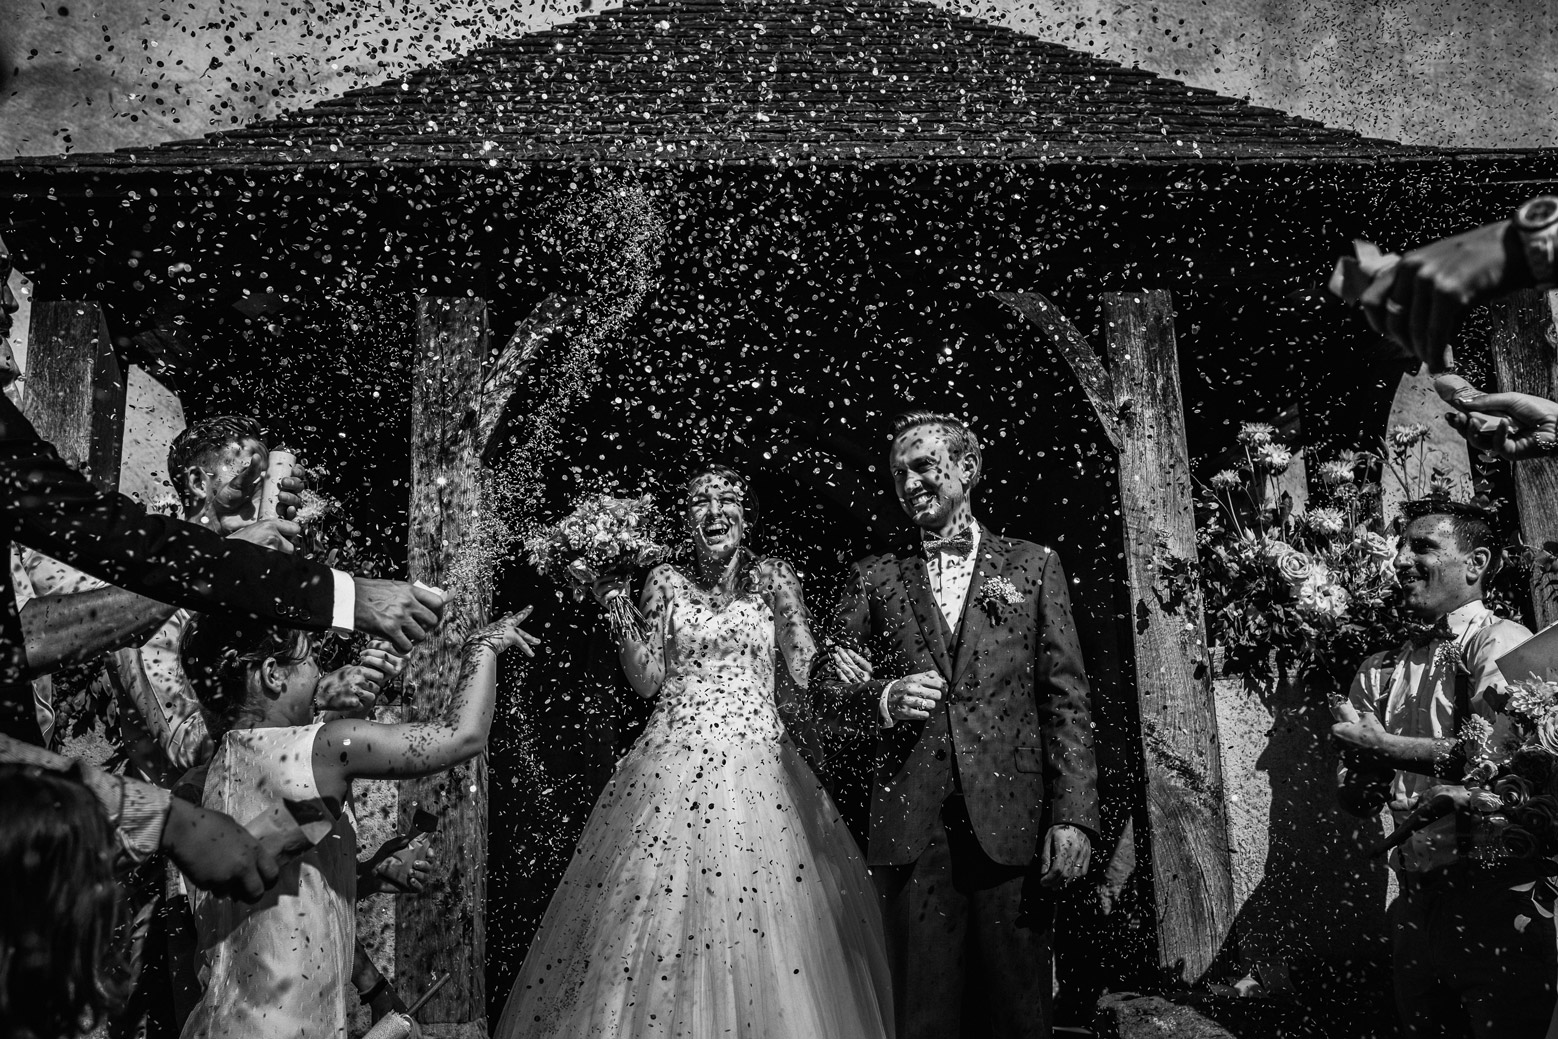 Meilleures photographies de mariage du photographe de mariage David Pommier. Photographe de mariage au château de Beauvoir - Sortie de l'église des mariés sous les confettis Combien coûte un photographe de mariage ?